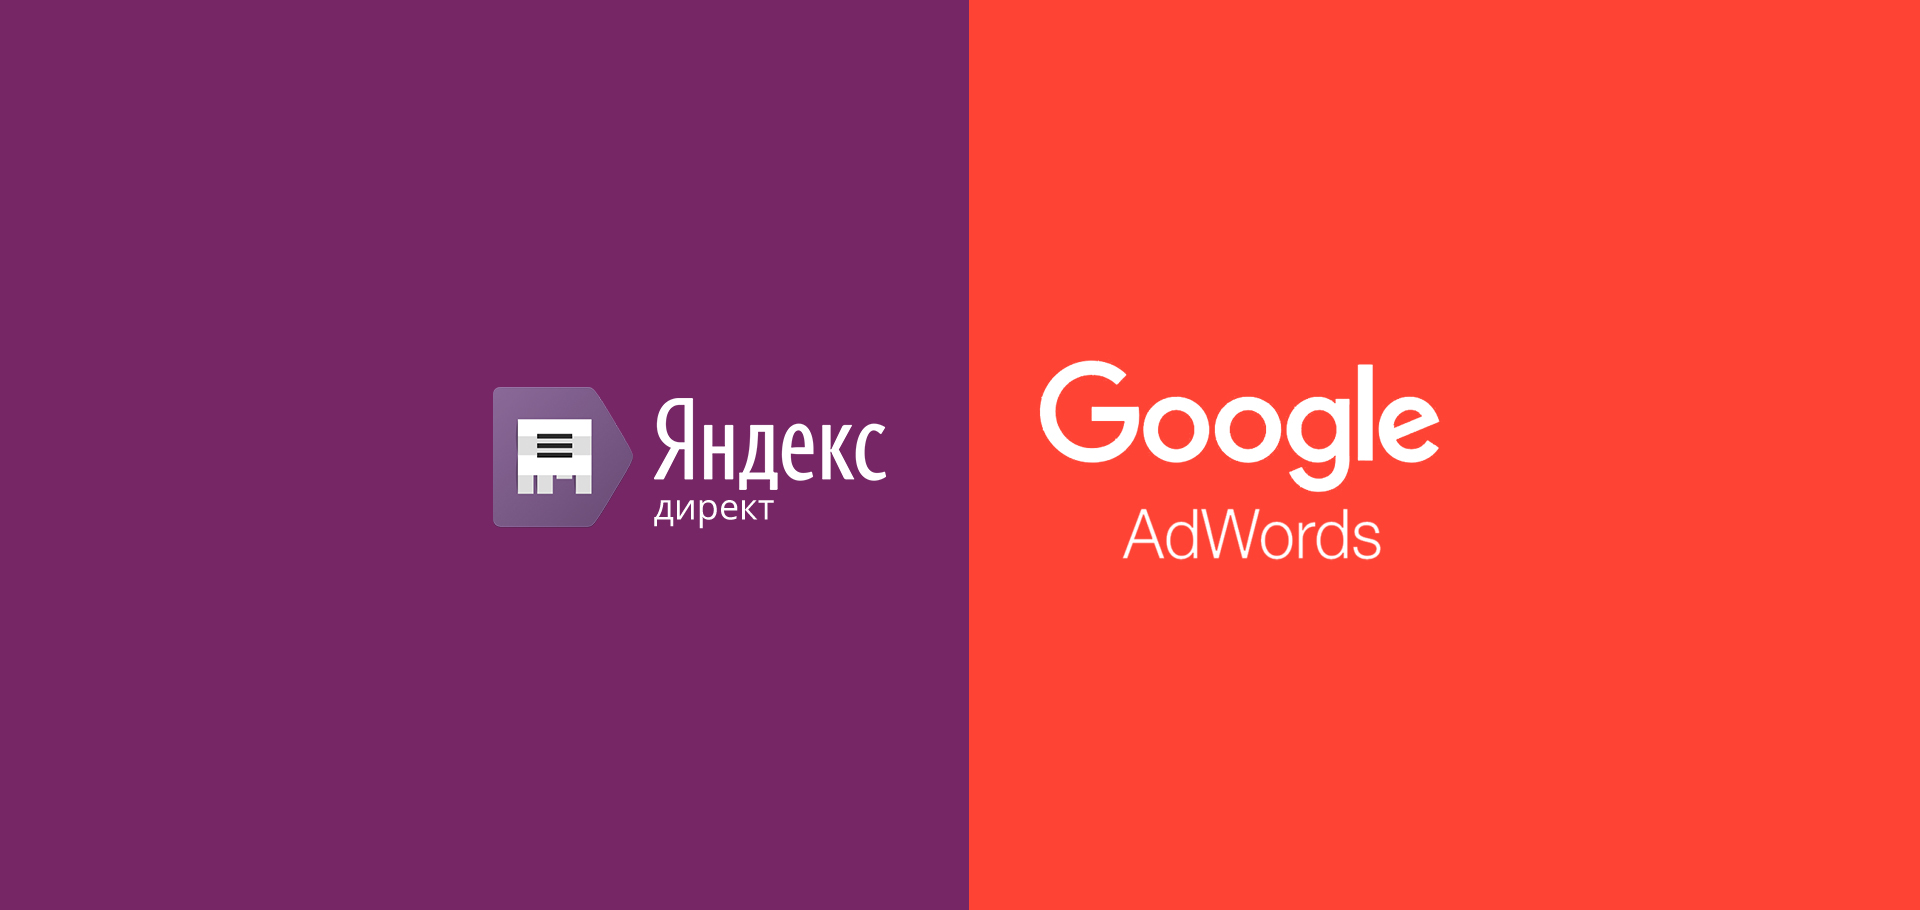 Как работает реклама в Яндекс.Директ и Google AdWords